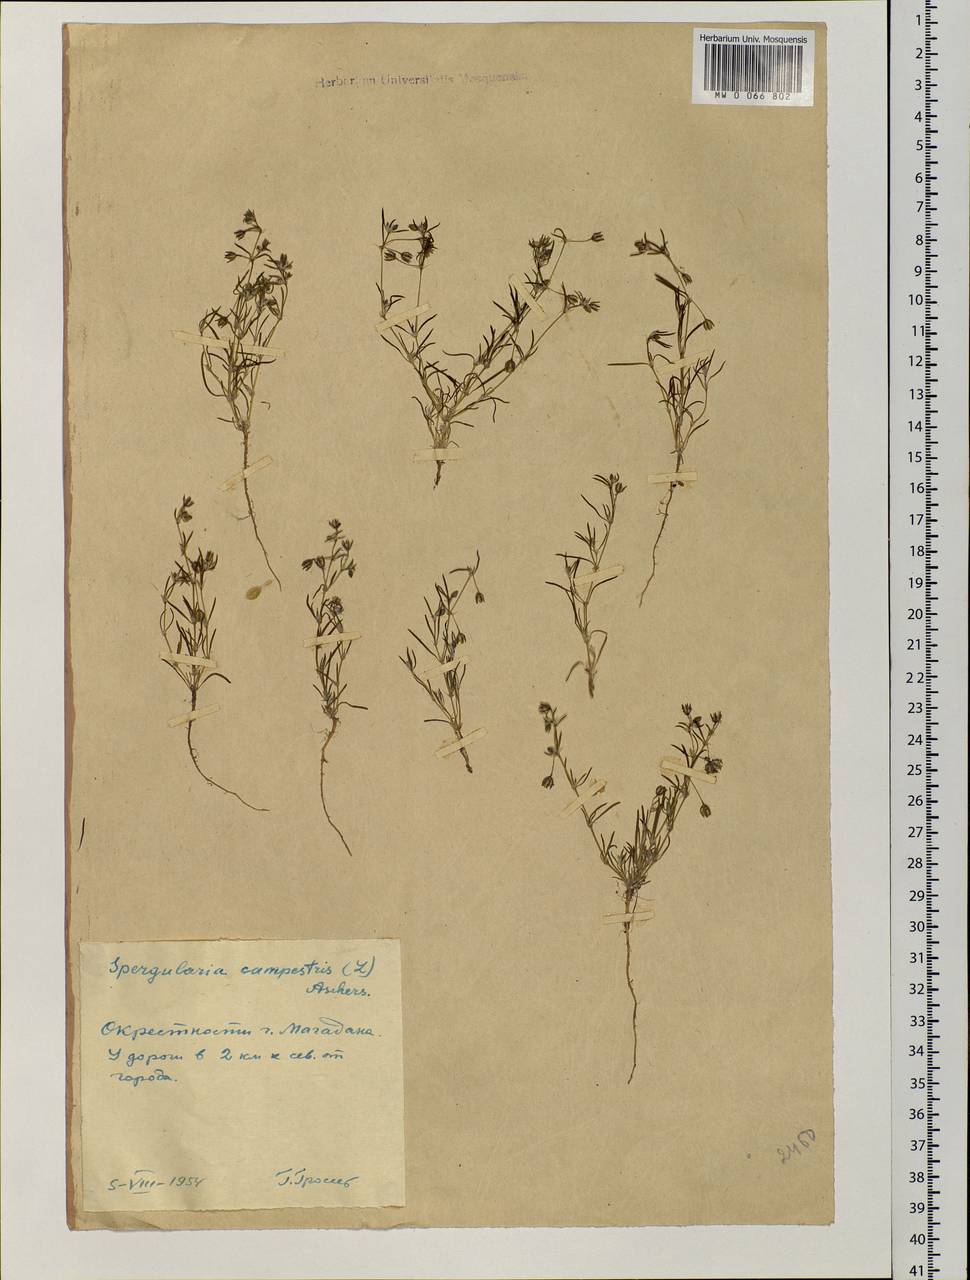 Spergularia rubra (L.) J. Presl & C. Presl, Siberia, Chukotka & Kamchatka (S7) (Russia)